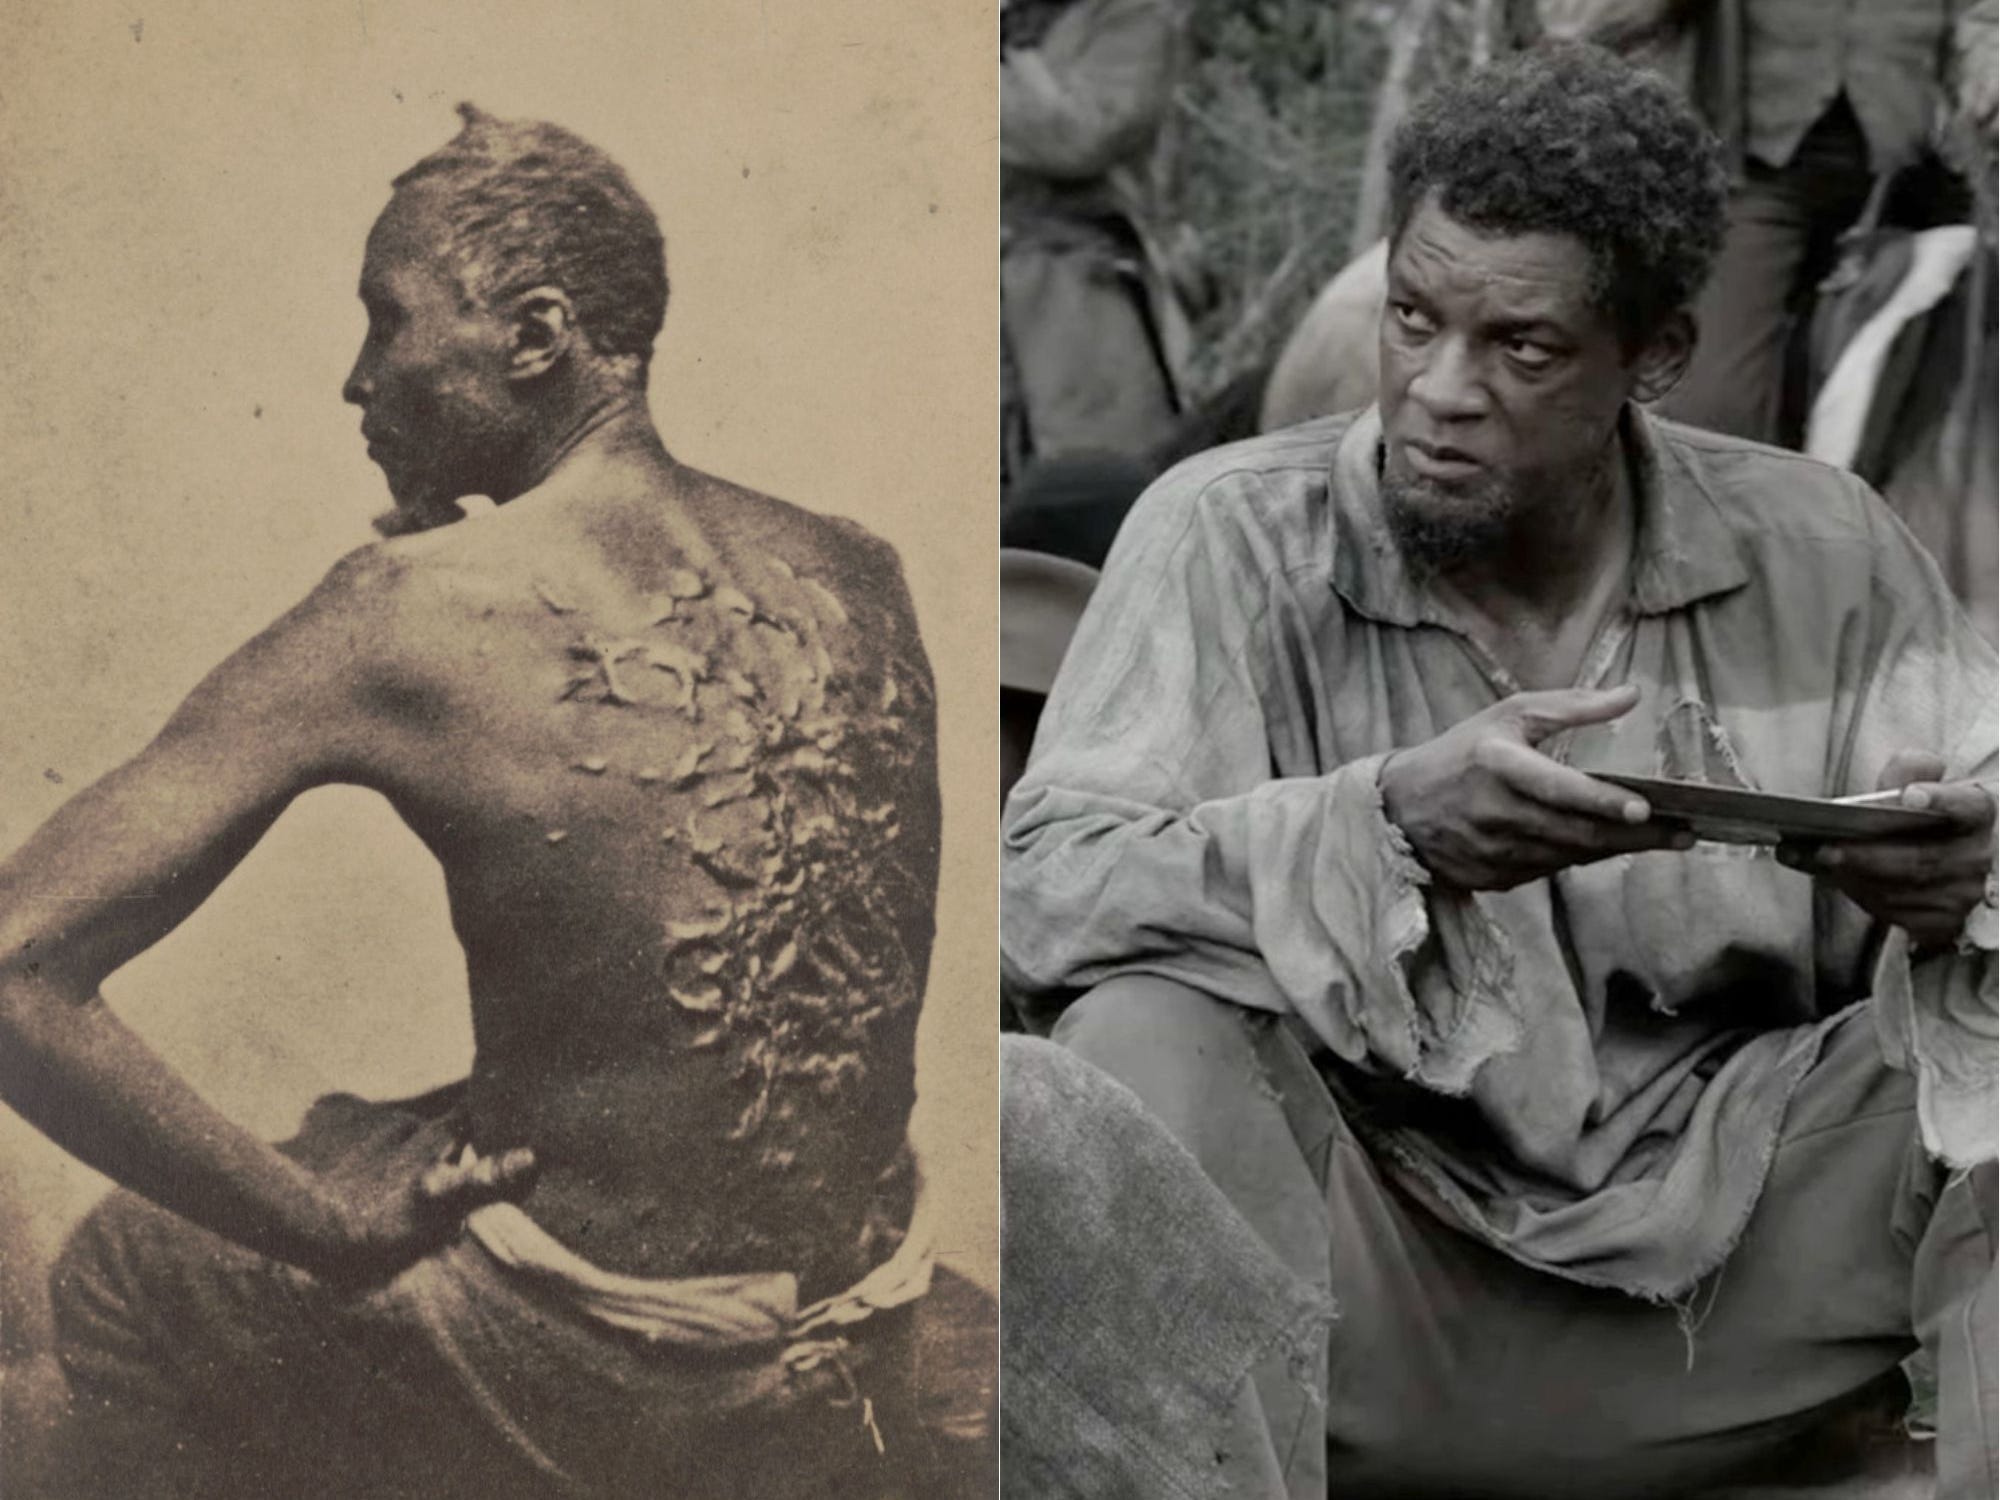 Diptychon von Will Smith in Emancipation und Gordon, von dessen wahrer Geschichte der Film inspiriert ist